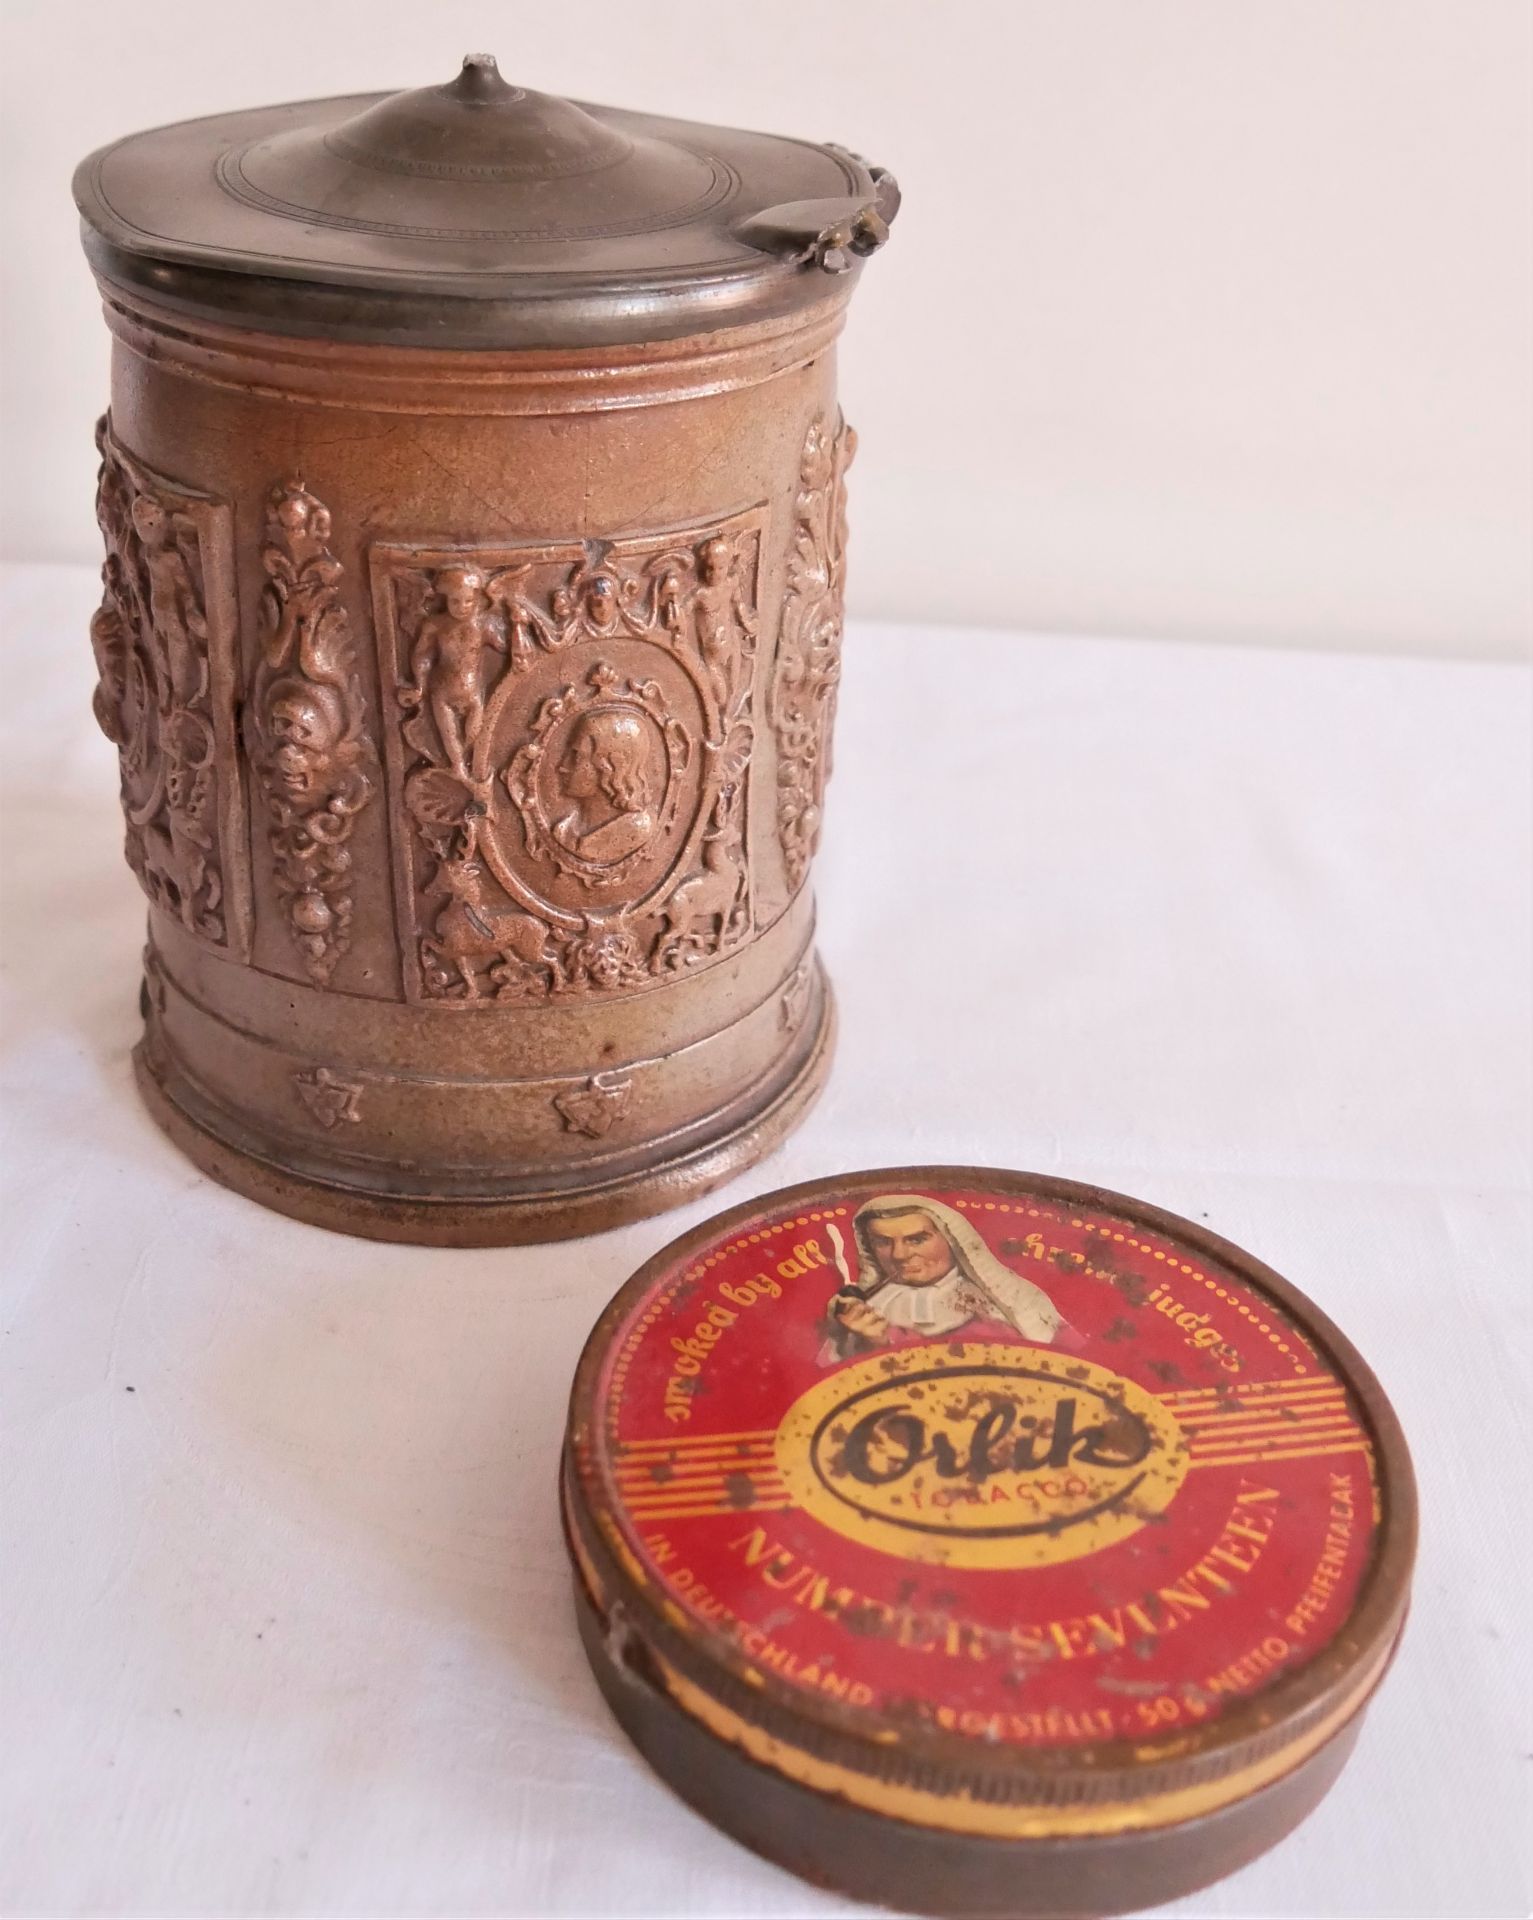 alter Keramik Tabaktopf um 1850, defekt zum restaurieren sowie eine alte Tabakblechdose.